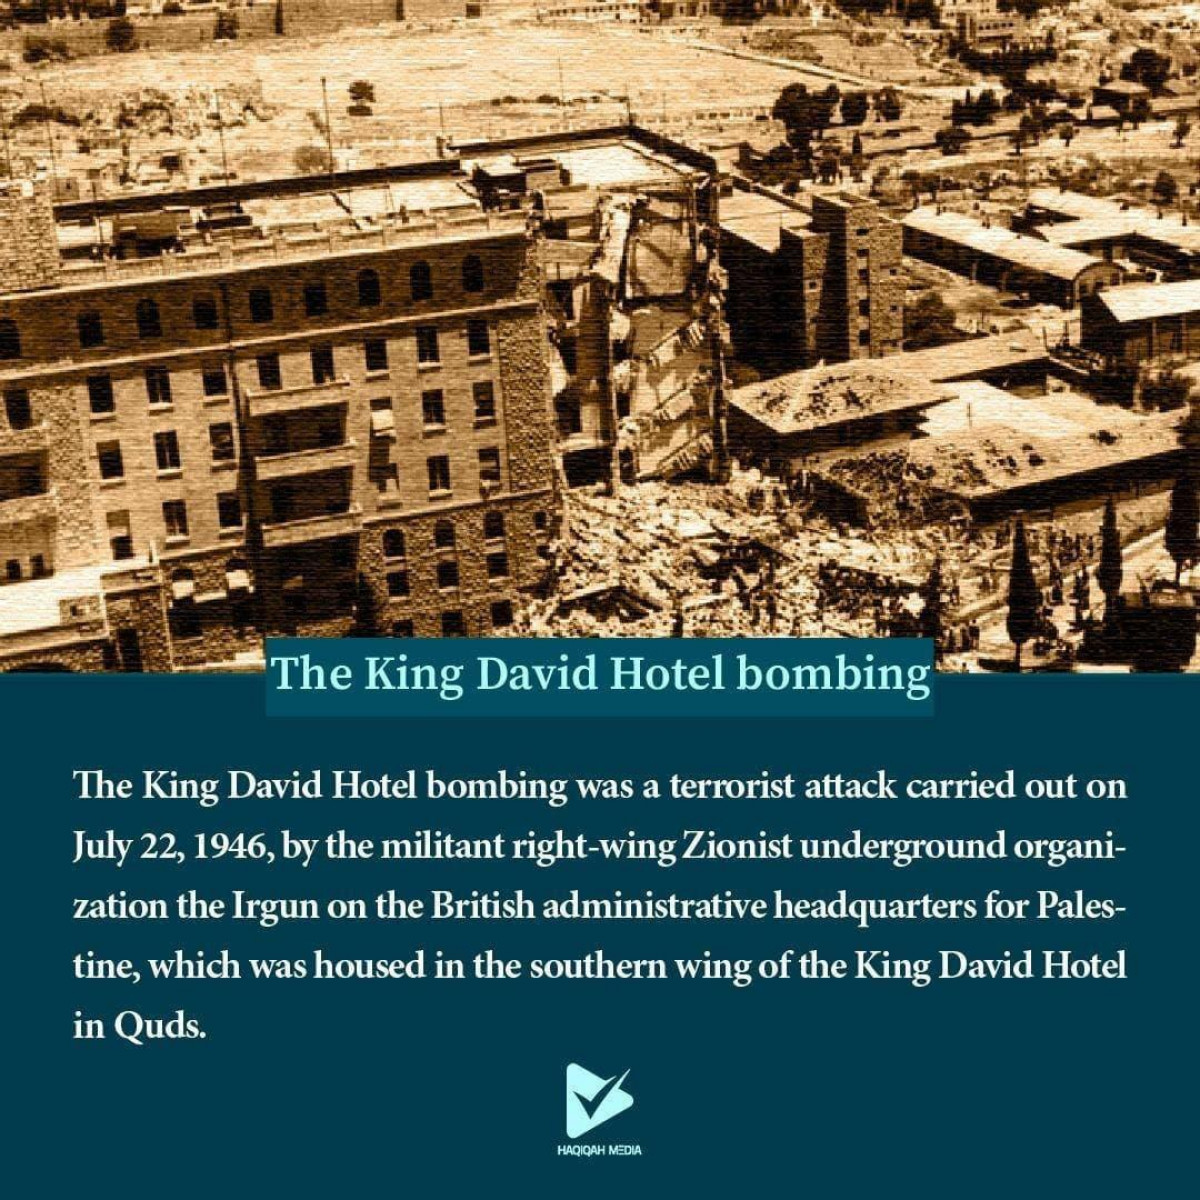 The King David Hotel bombing